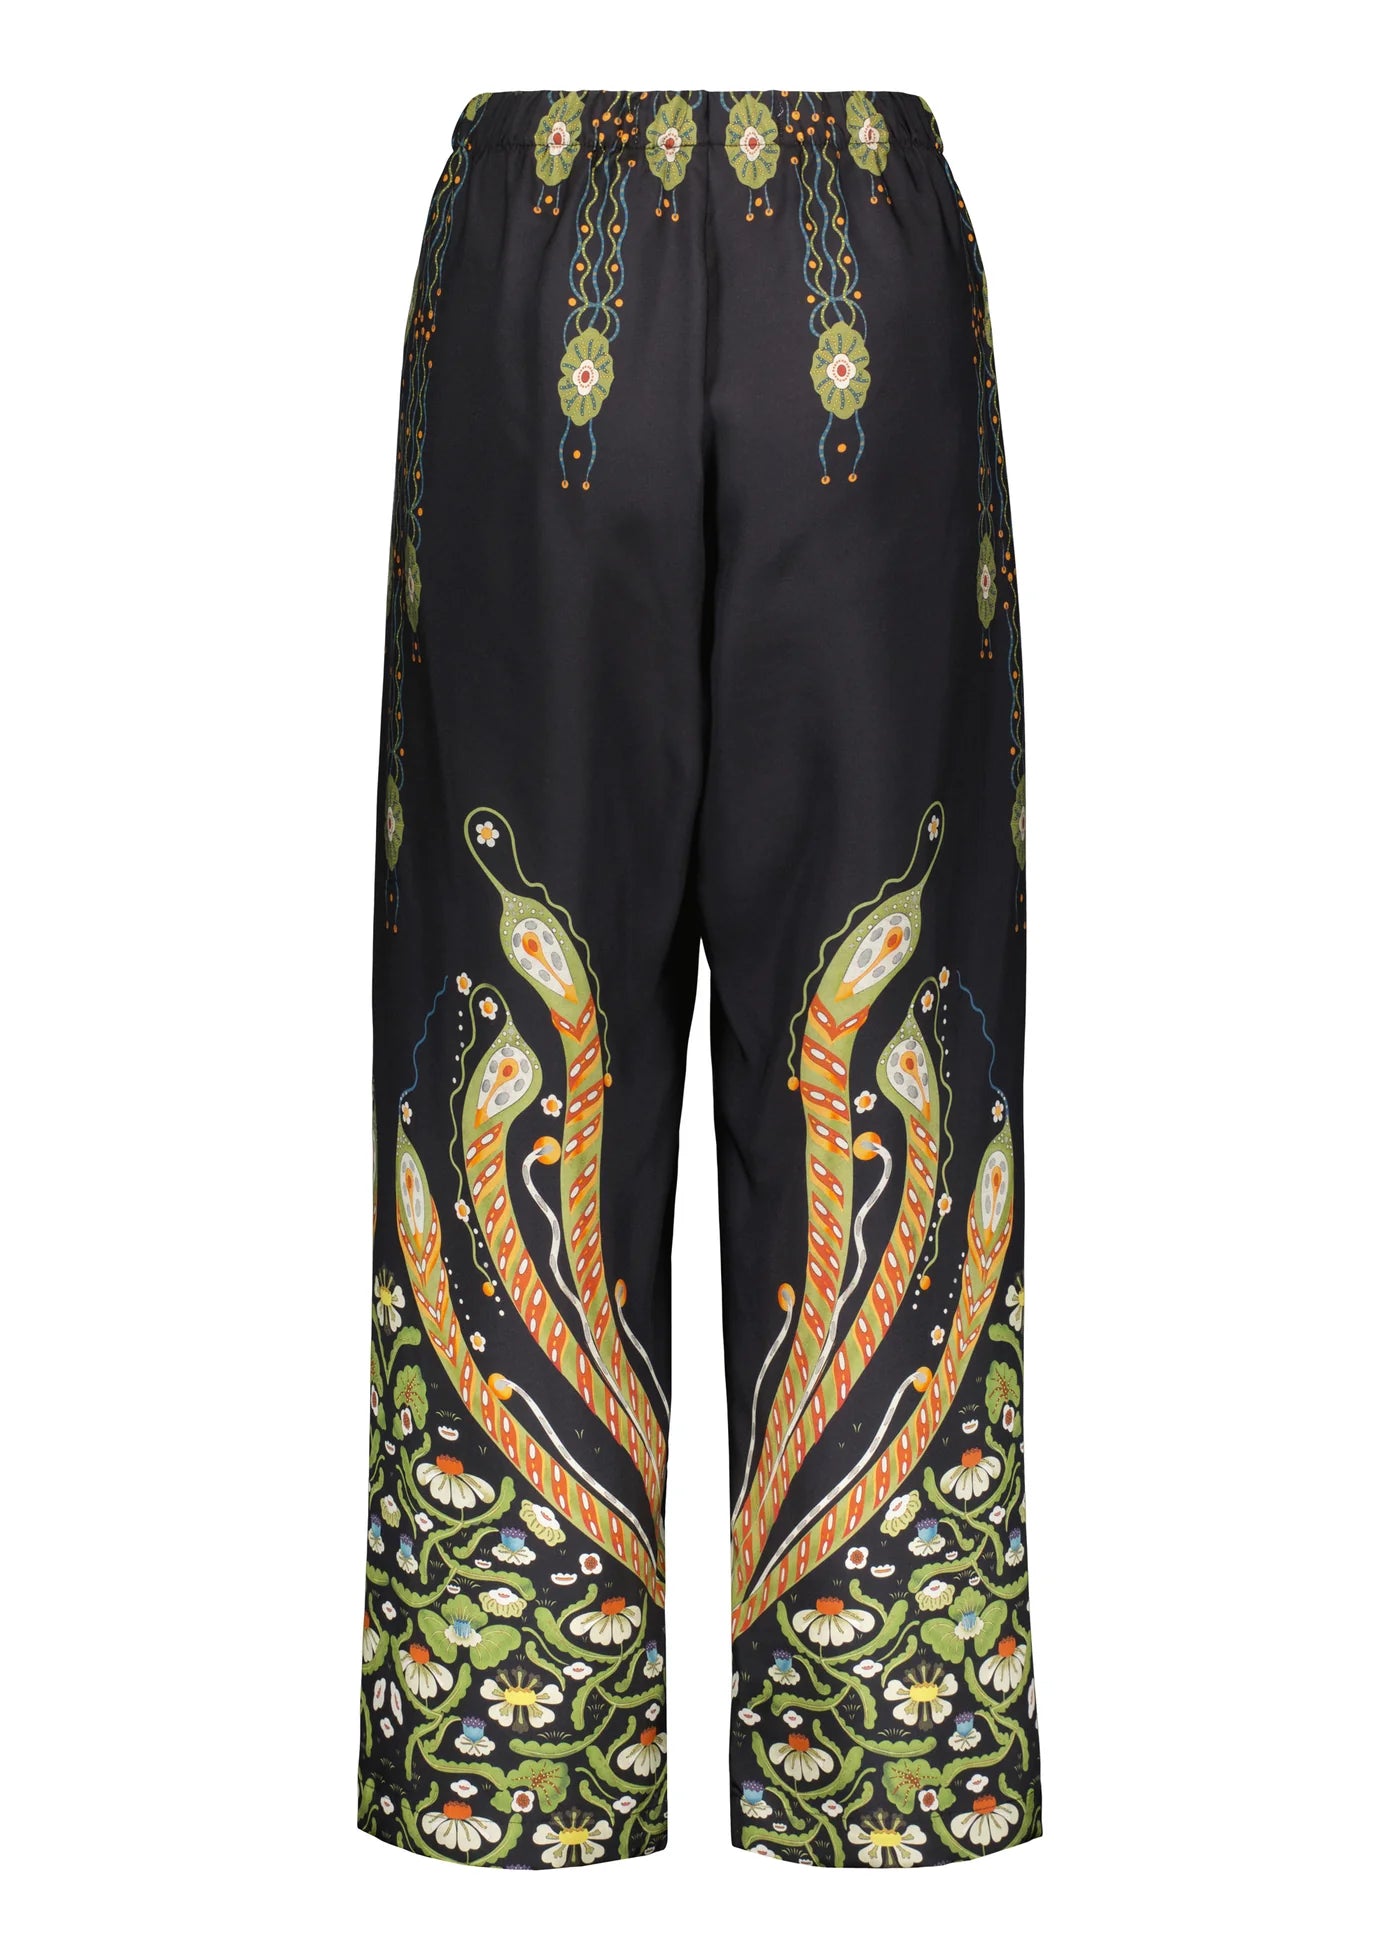 Firebird silk twill trousers | KLAUS HAAPANIEMI & CO.